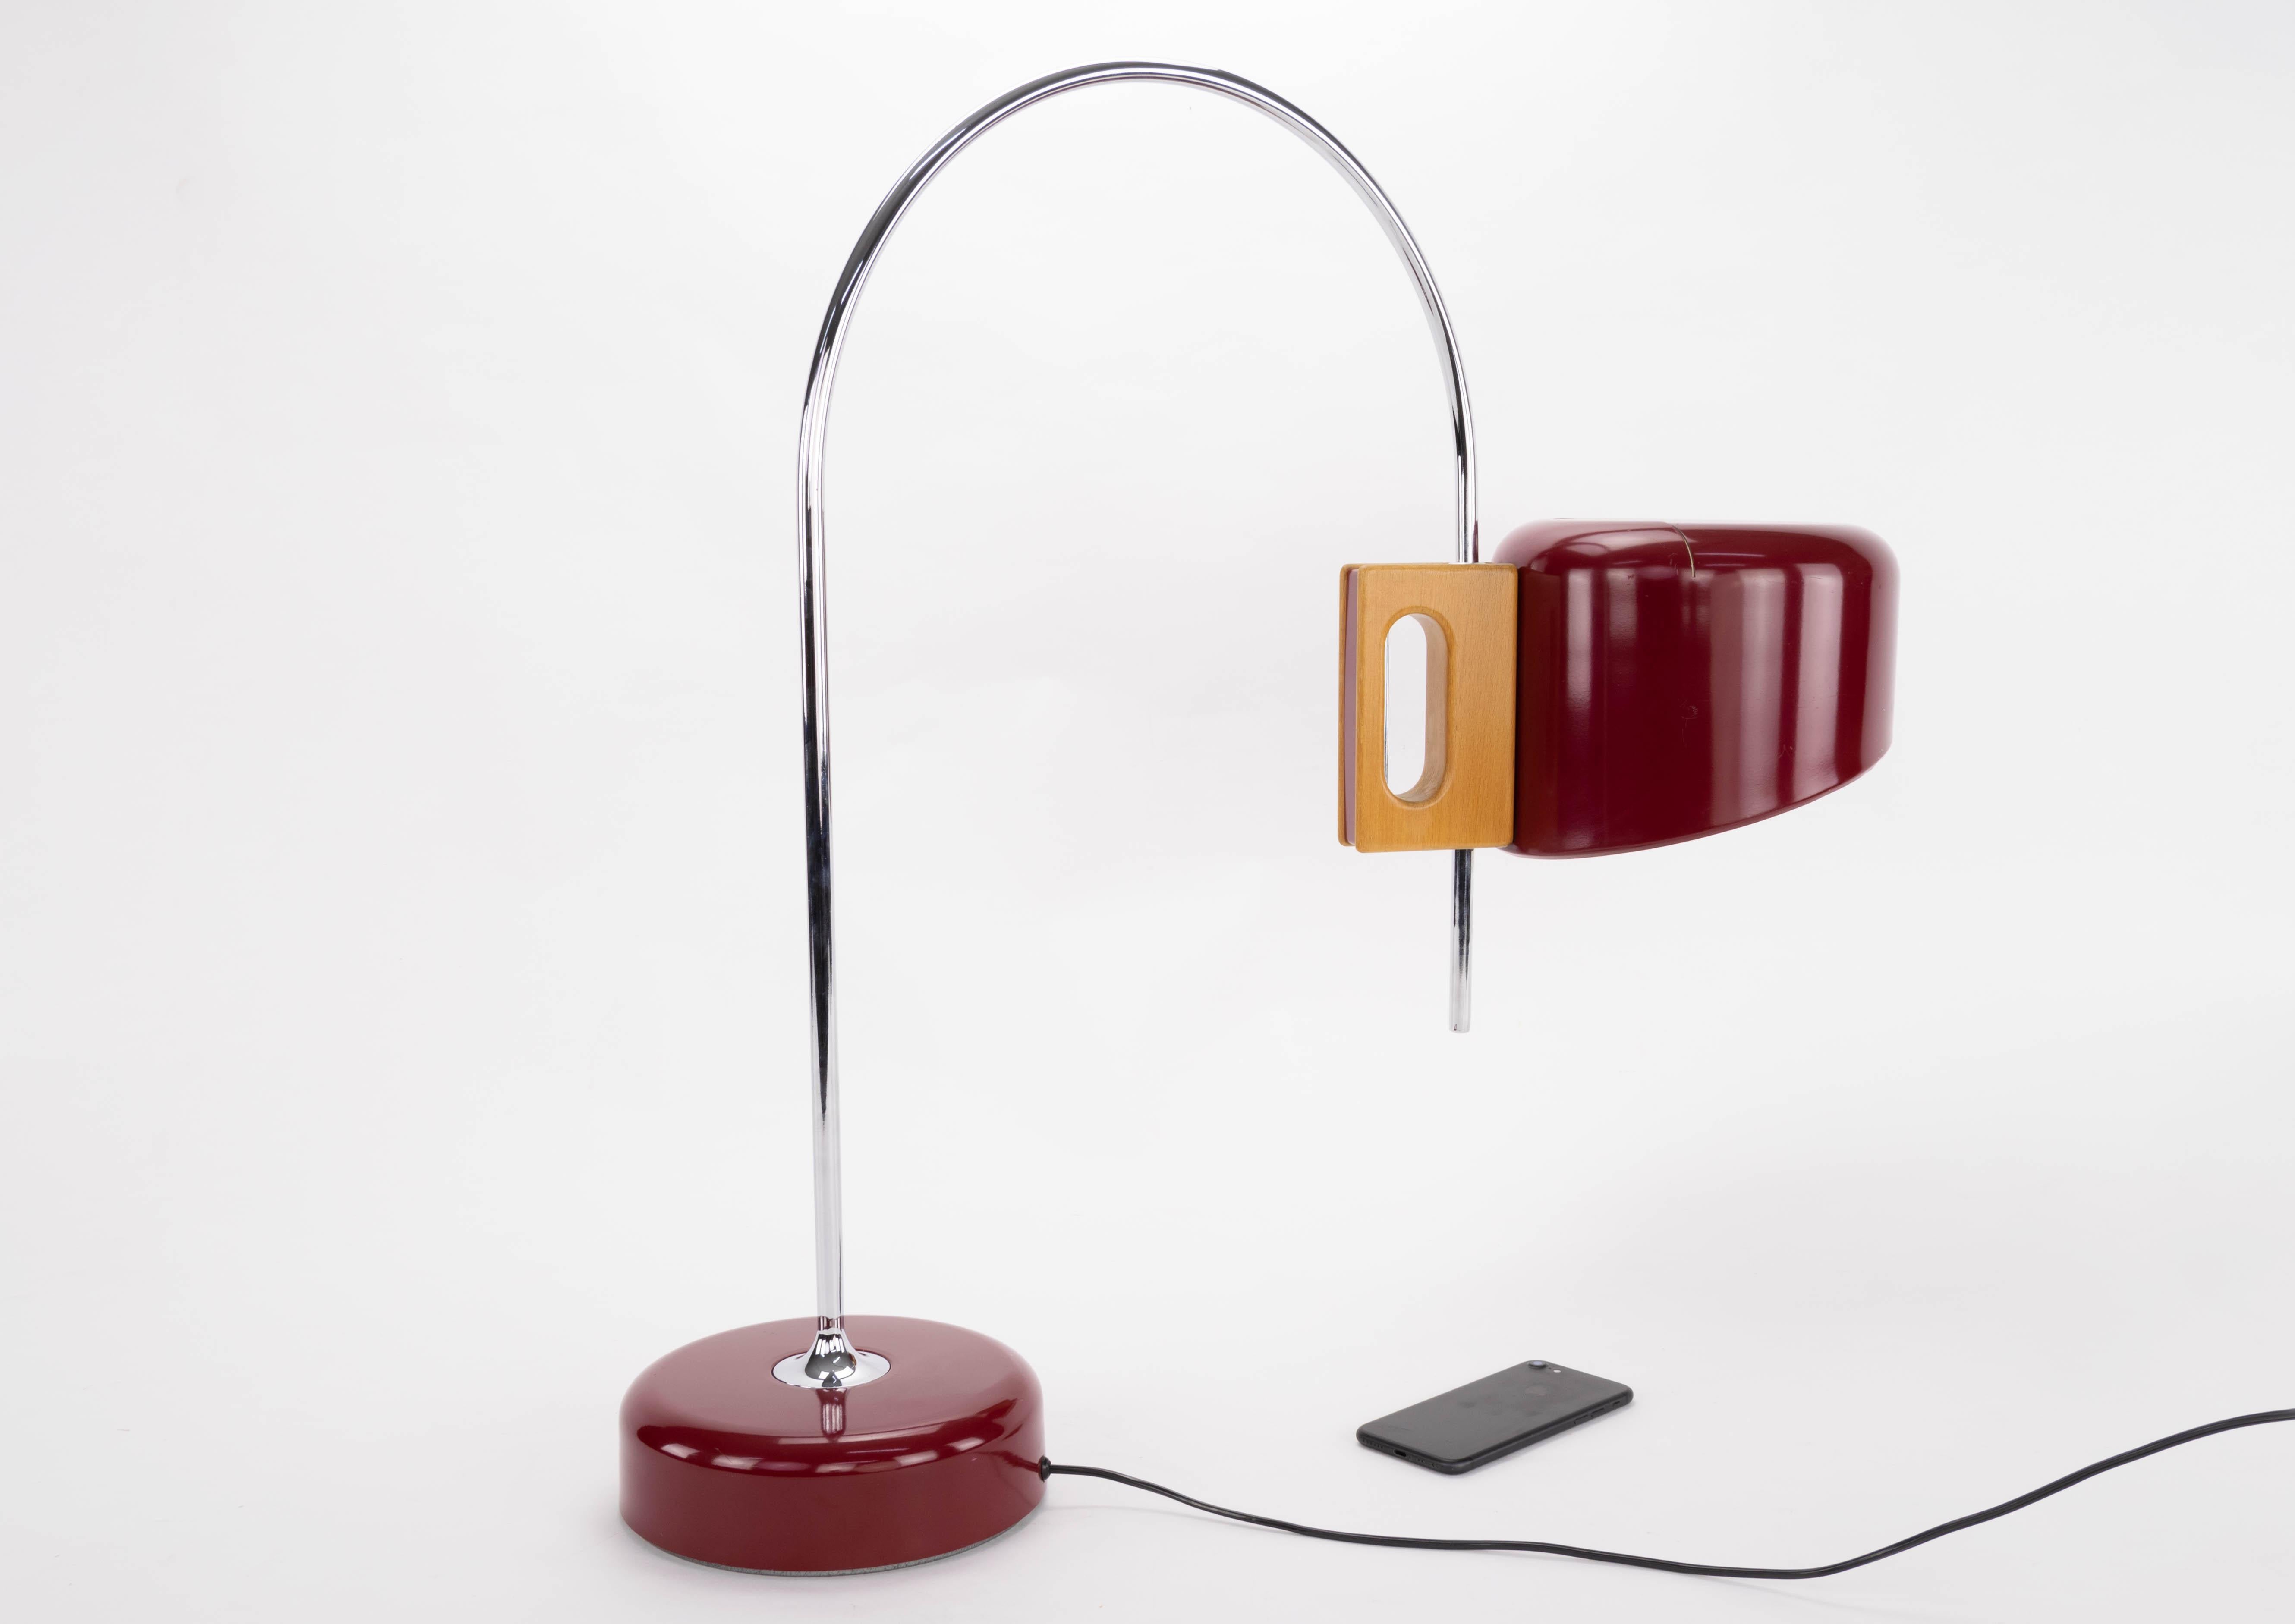 Chrome Sauce Mid-Century Modern Arc Table Lamp by Face Spain 1960